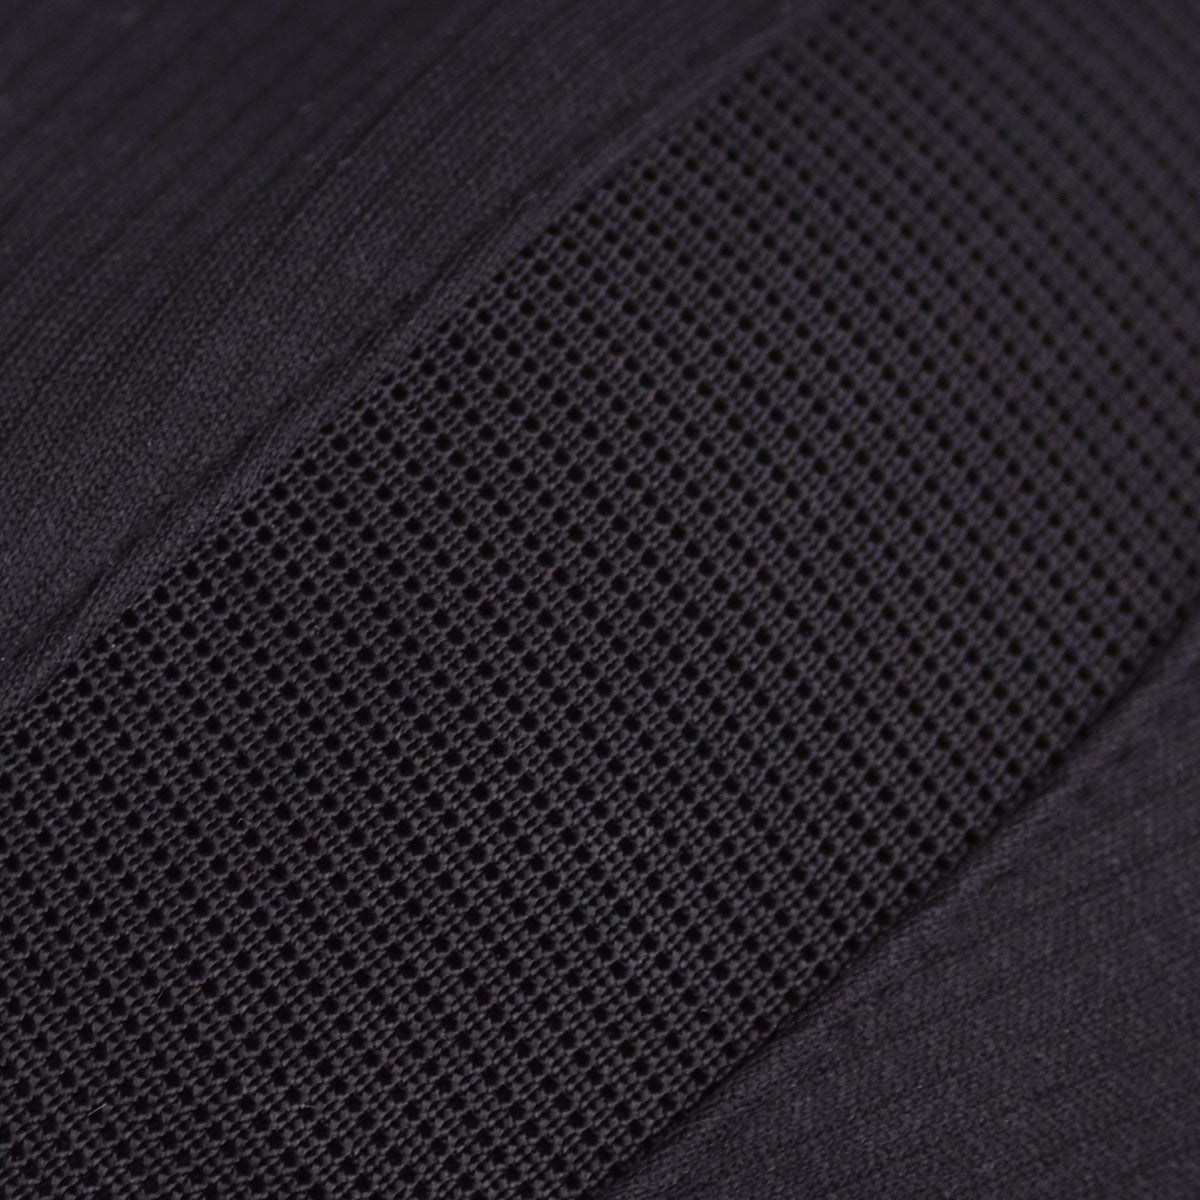 Close-up on ultimate sports bra fabric | SHEFIT